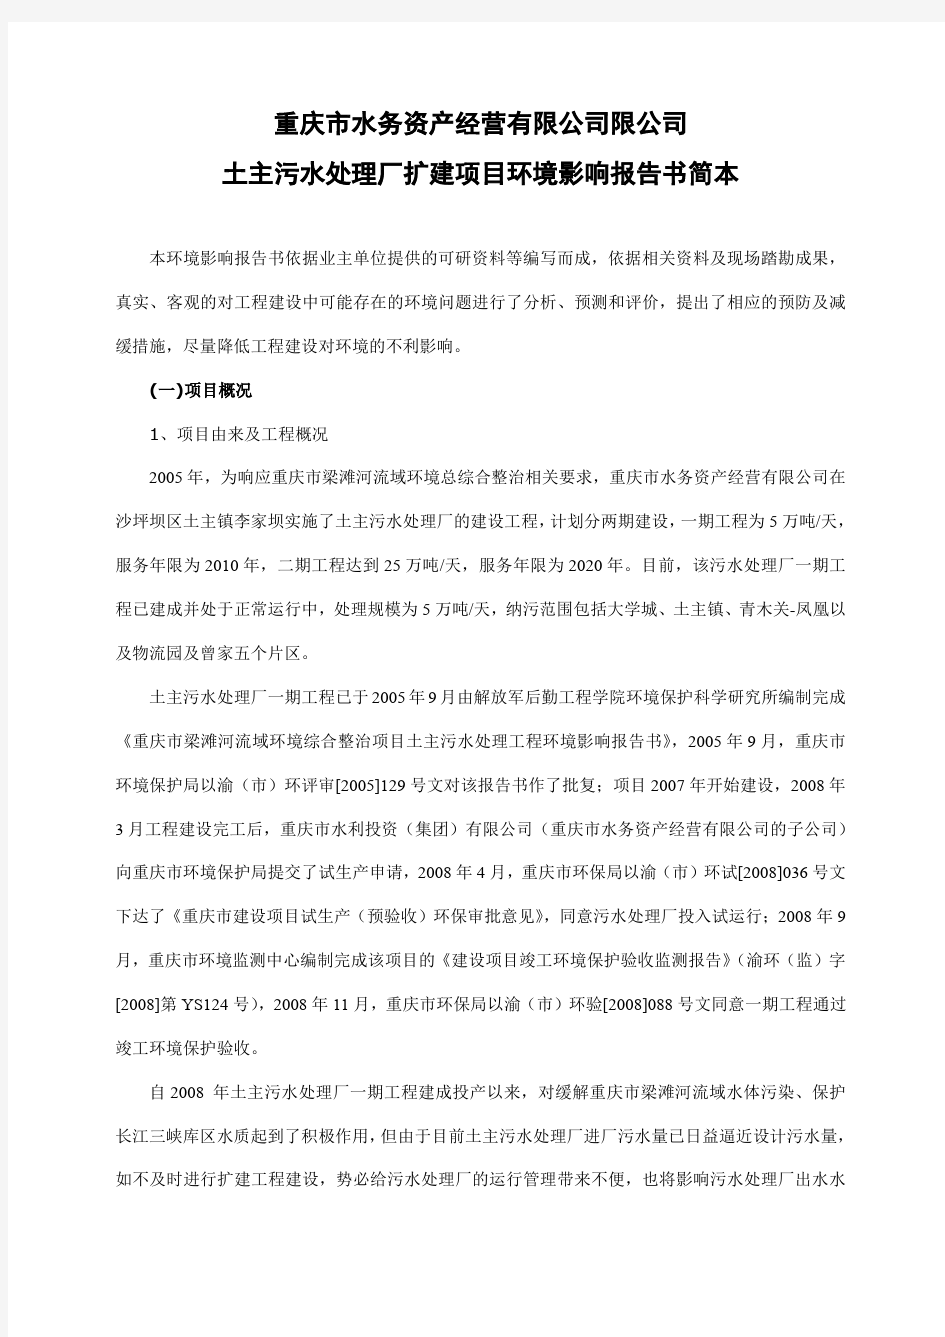 重庆水务资产经营有限公司限公司土主污水处理厂扩建项目环境